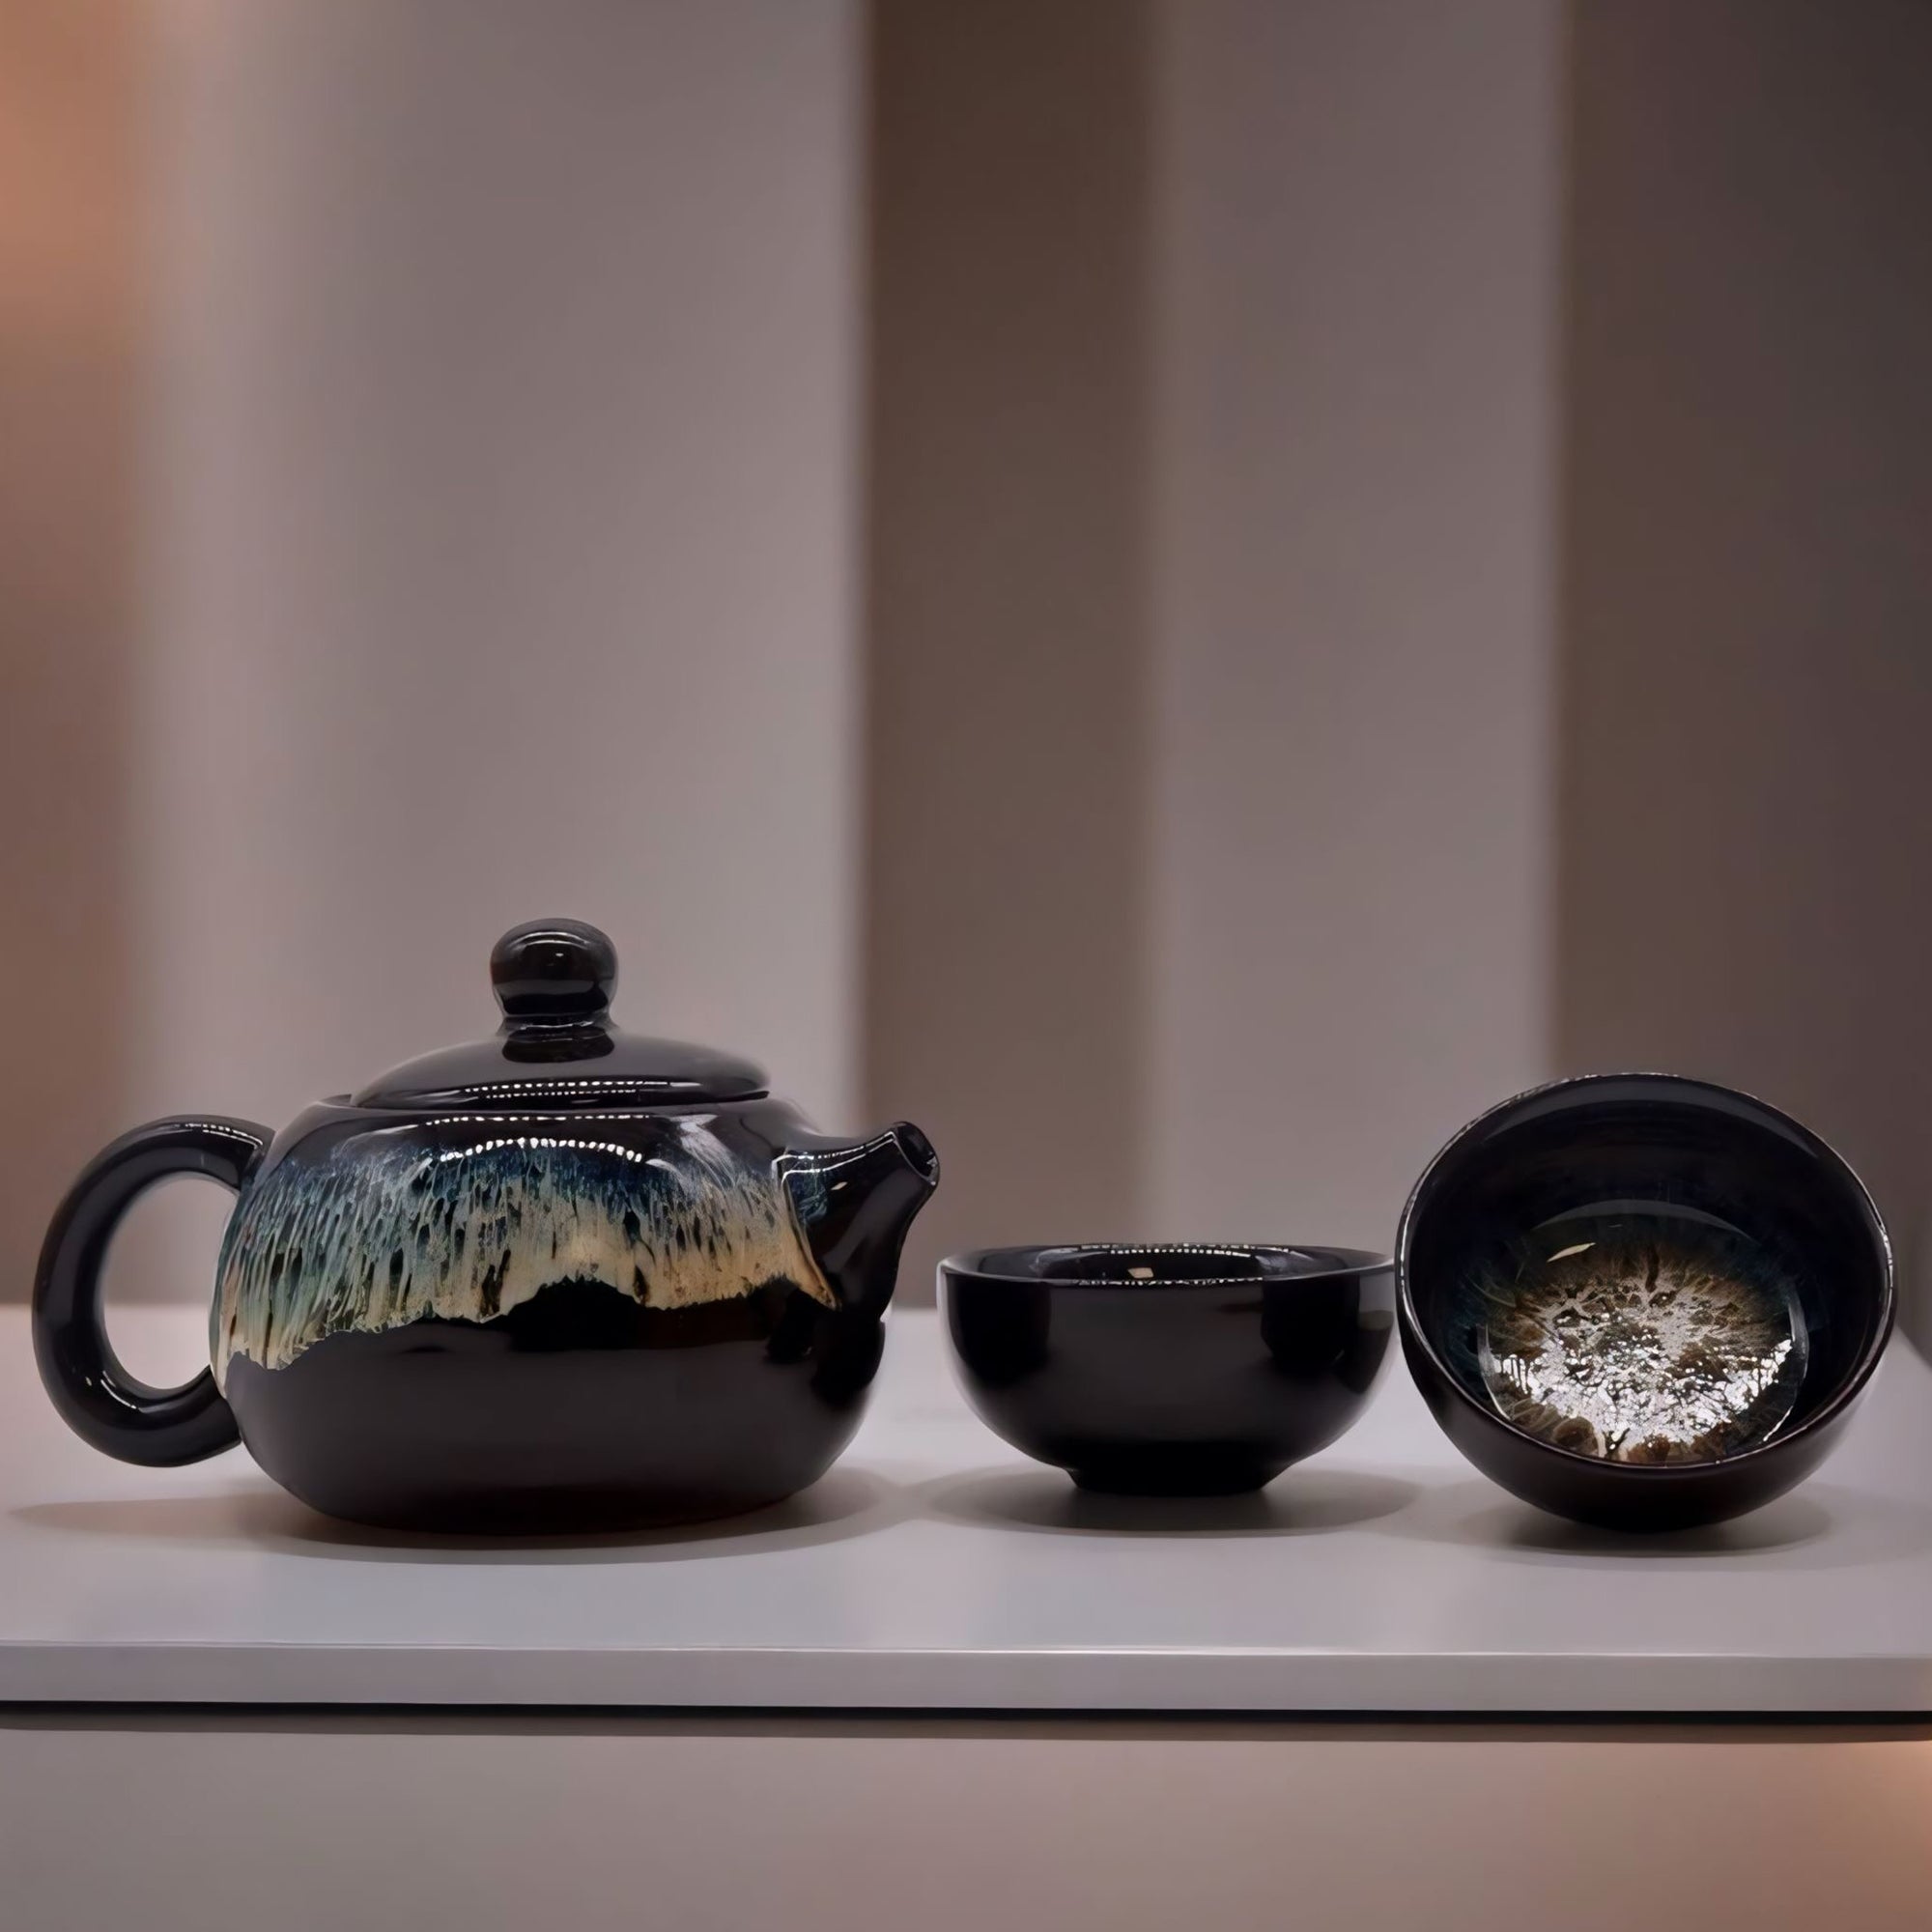 Glazed Black Tea Set with Teapot and Tea Cups - Herbal Tea Set - Loose Leaf Teaset